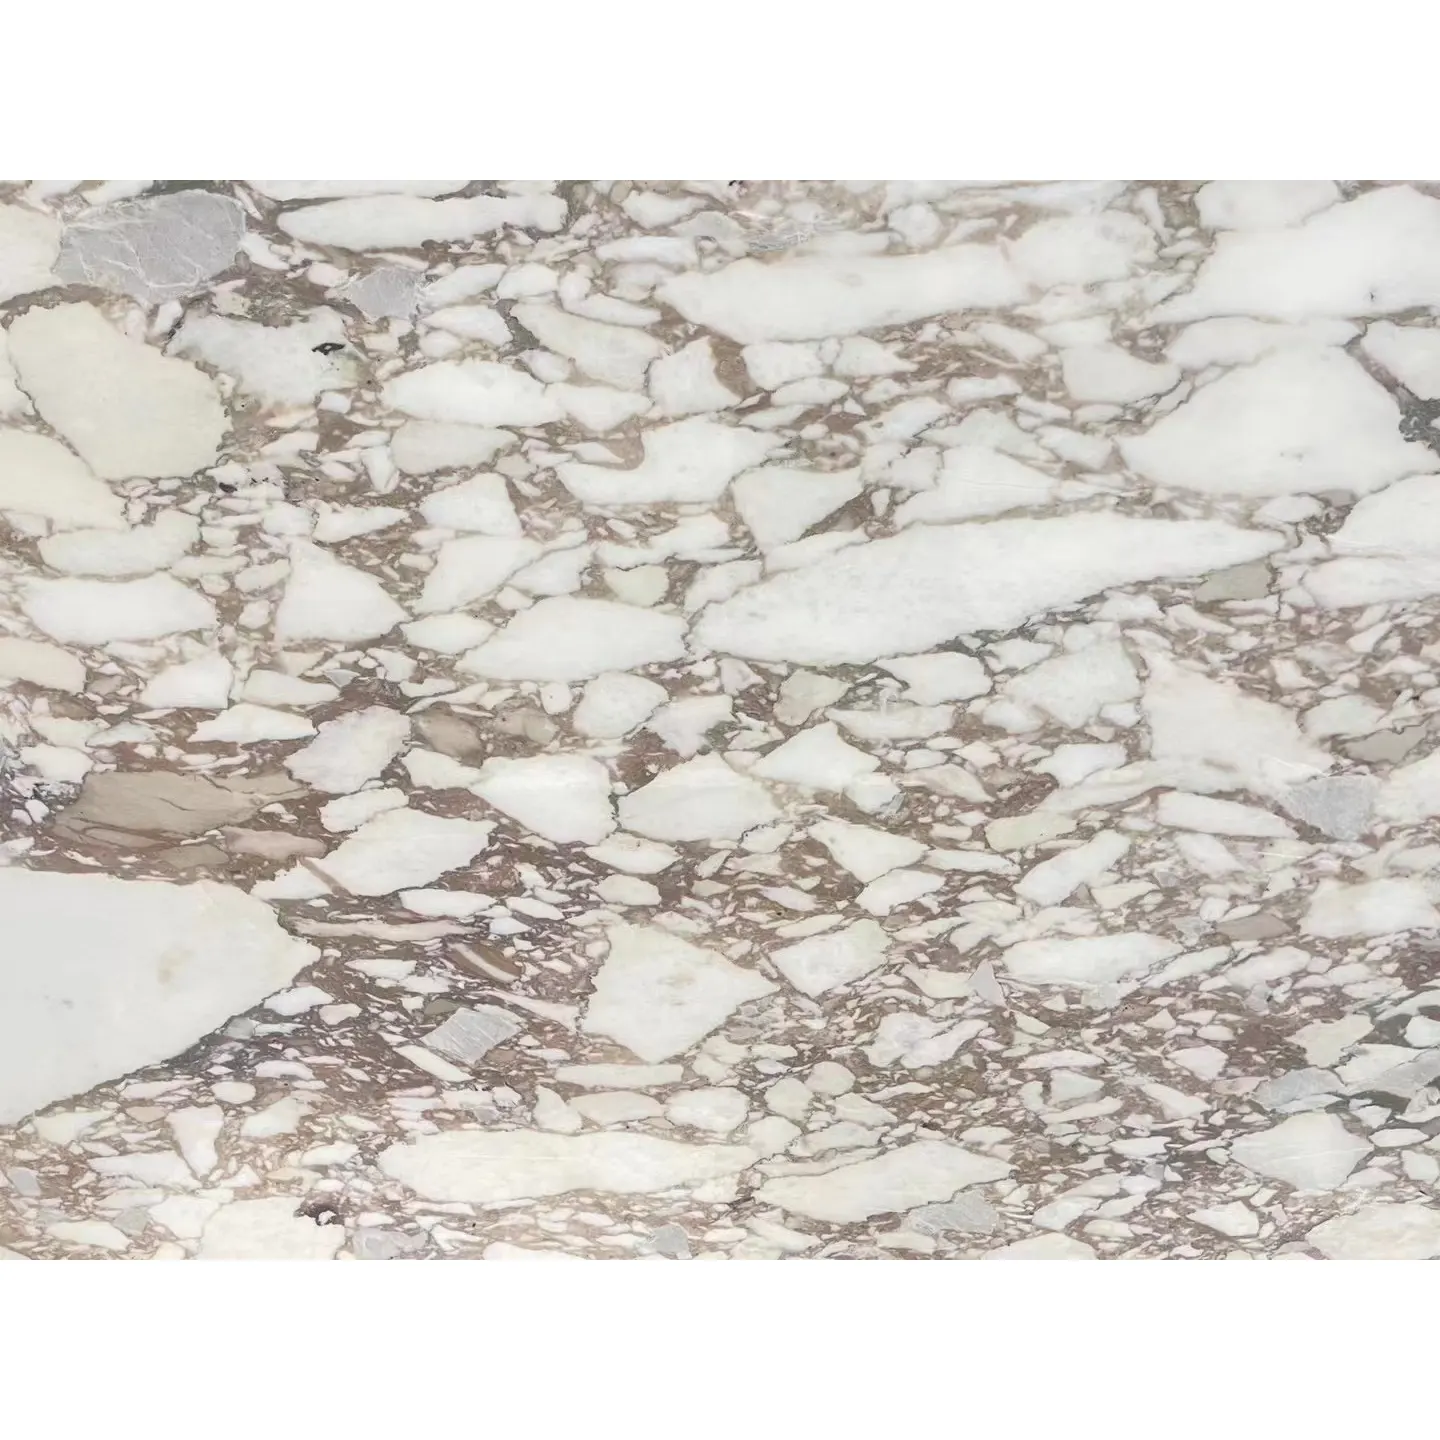 Laje de pedra de mármore italiana Calacatta com veias douradas, laje de bancada, parede, mesa de jantar, azulejos, azulejos, cozinha, ilha